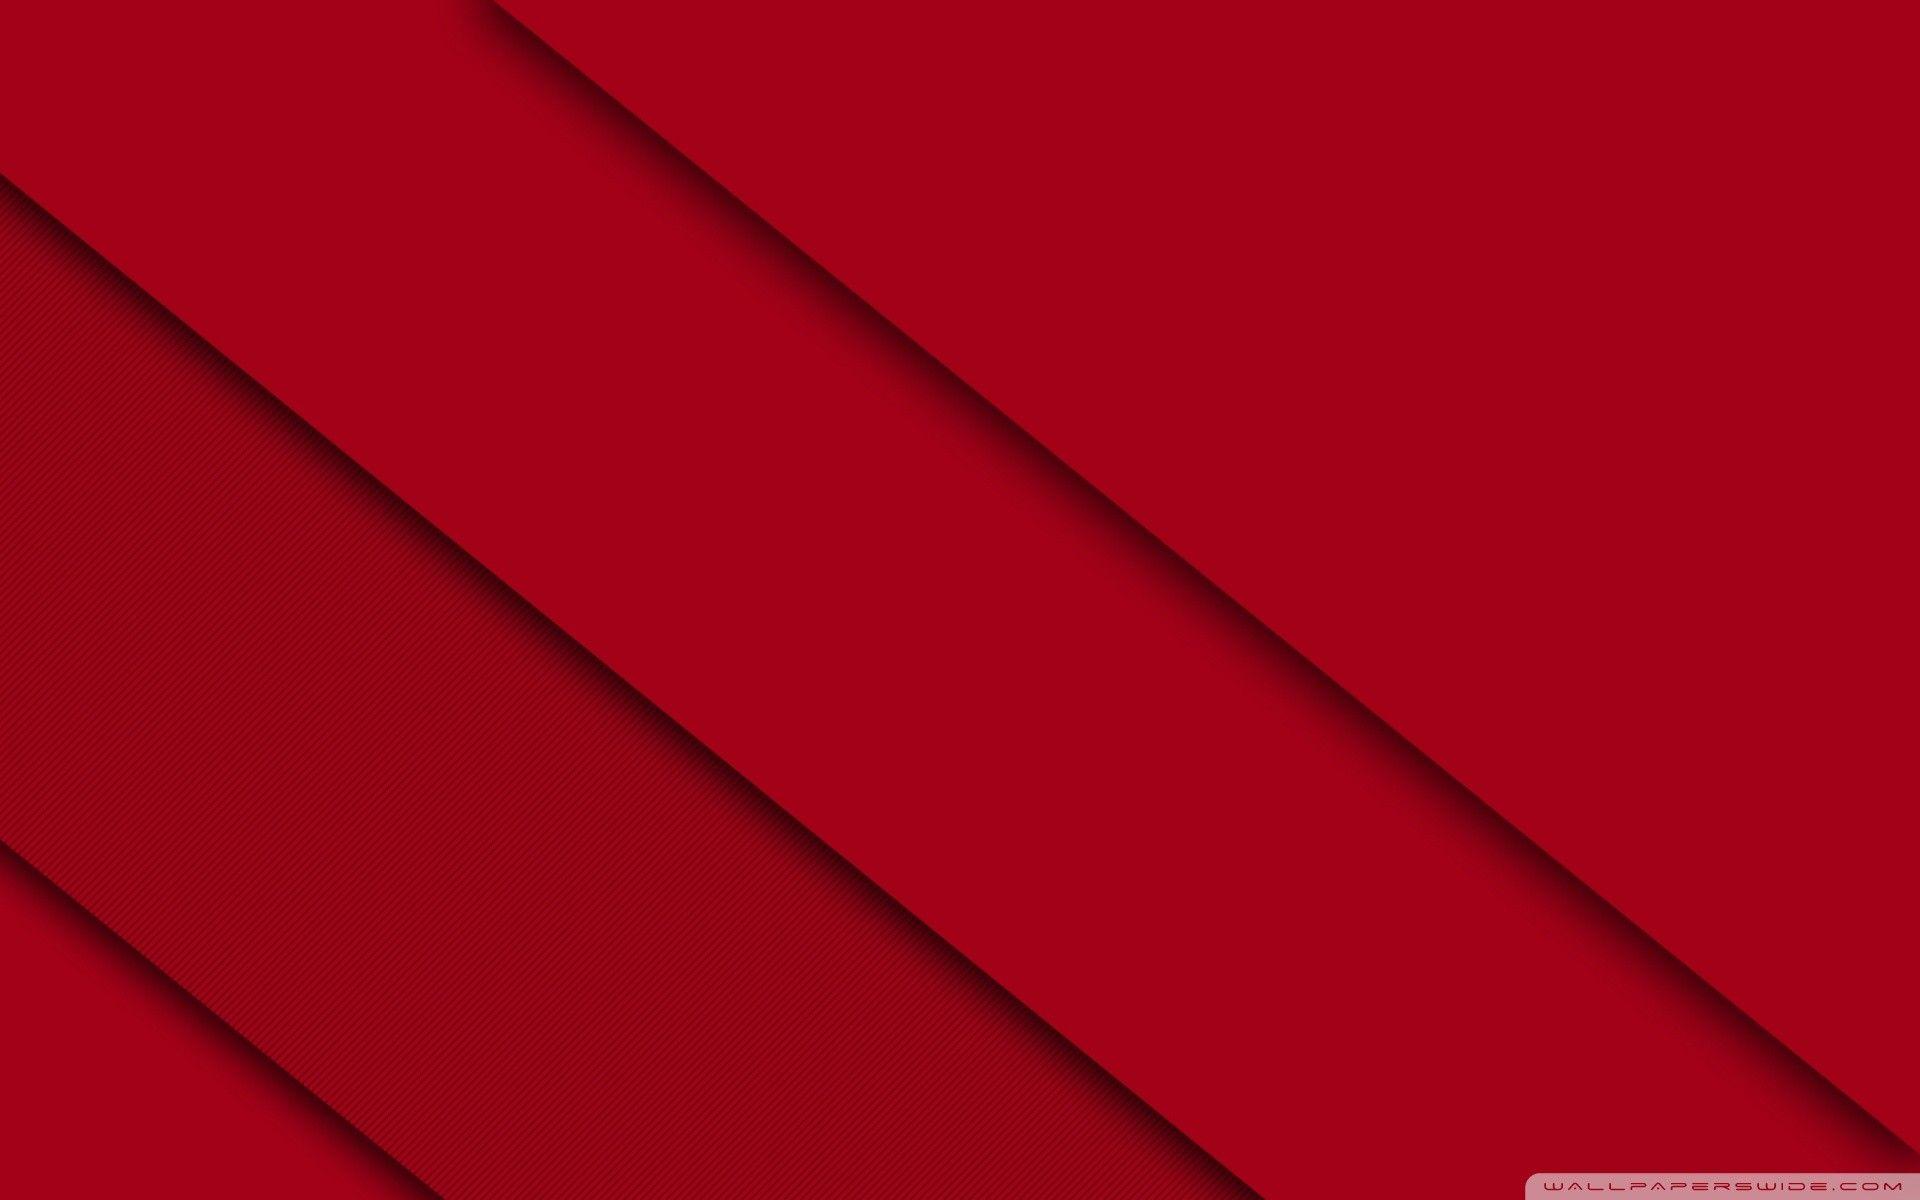 Hình nền đỏ kim loại - Phông nền đỏ kim loại miễn phí hàng đầu đã trở thành một hiện tượng trong nhiều năm qua. Với sự sáng tạo và khả năng kết hợp linh hoạt, bạn có thể tạo ra những thiết kế độc đáo và đầy màu sắc. Khám phá hình ảnh này và sáng tạo nào!